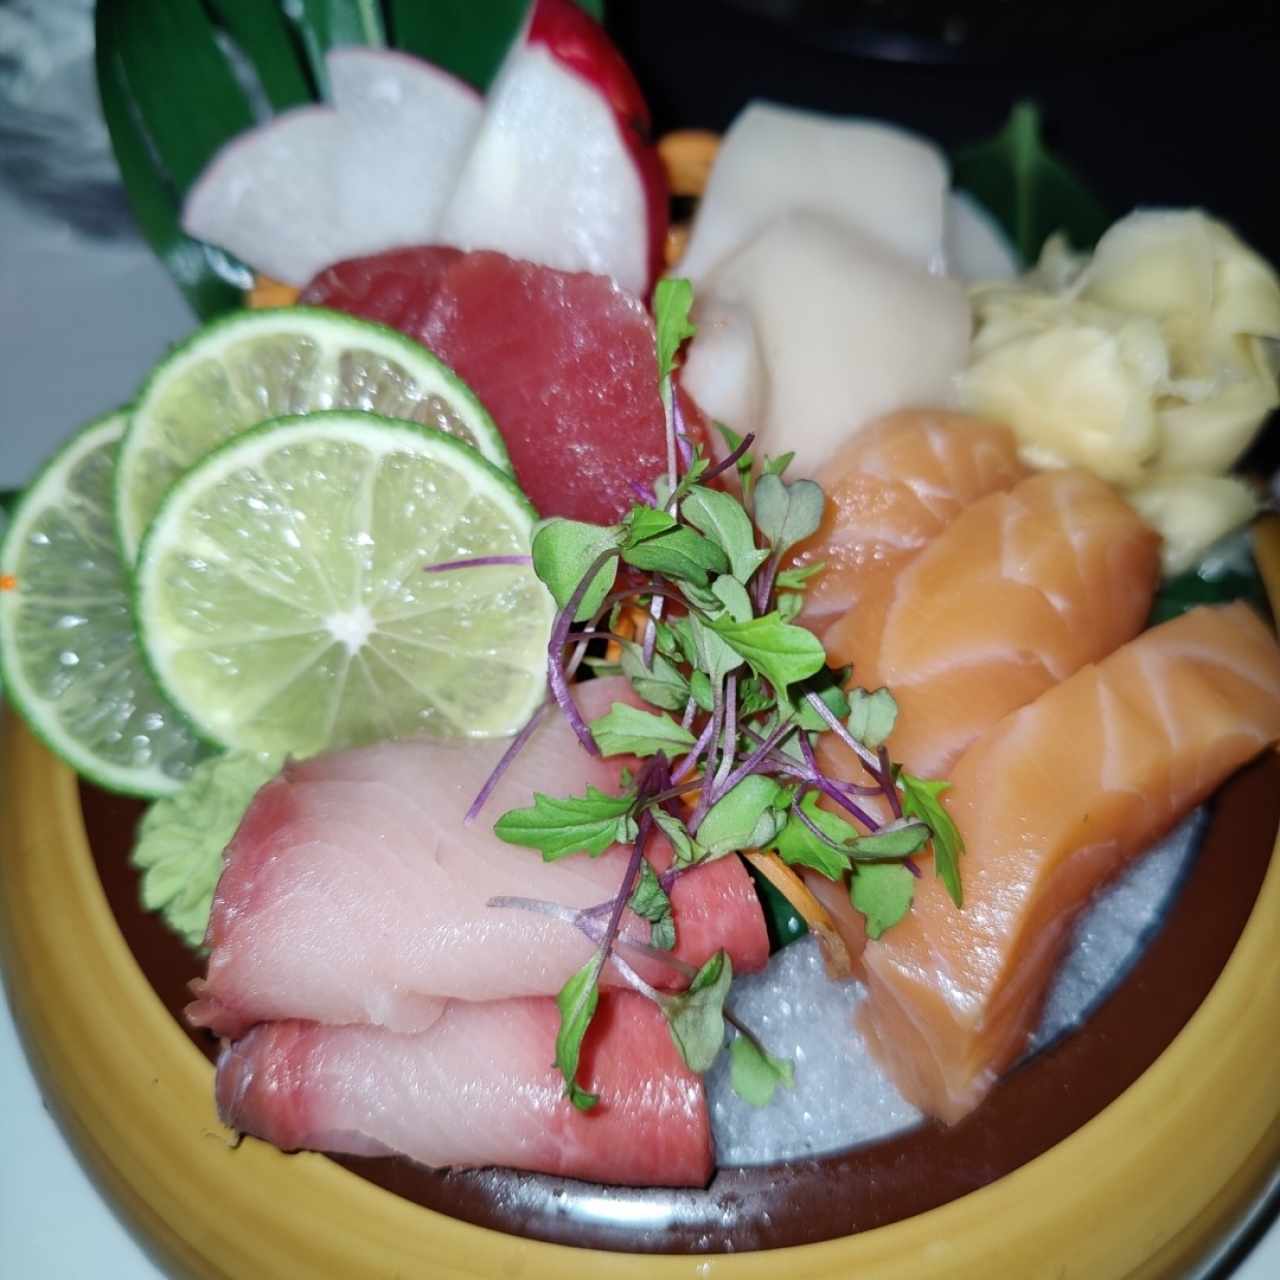 Sushi Bar - Mistura de Sashimi